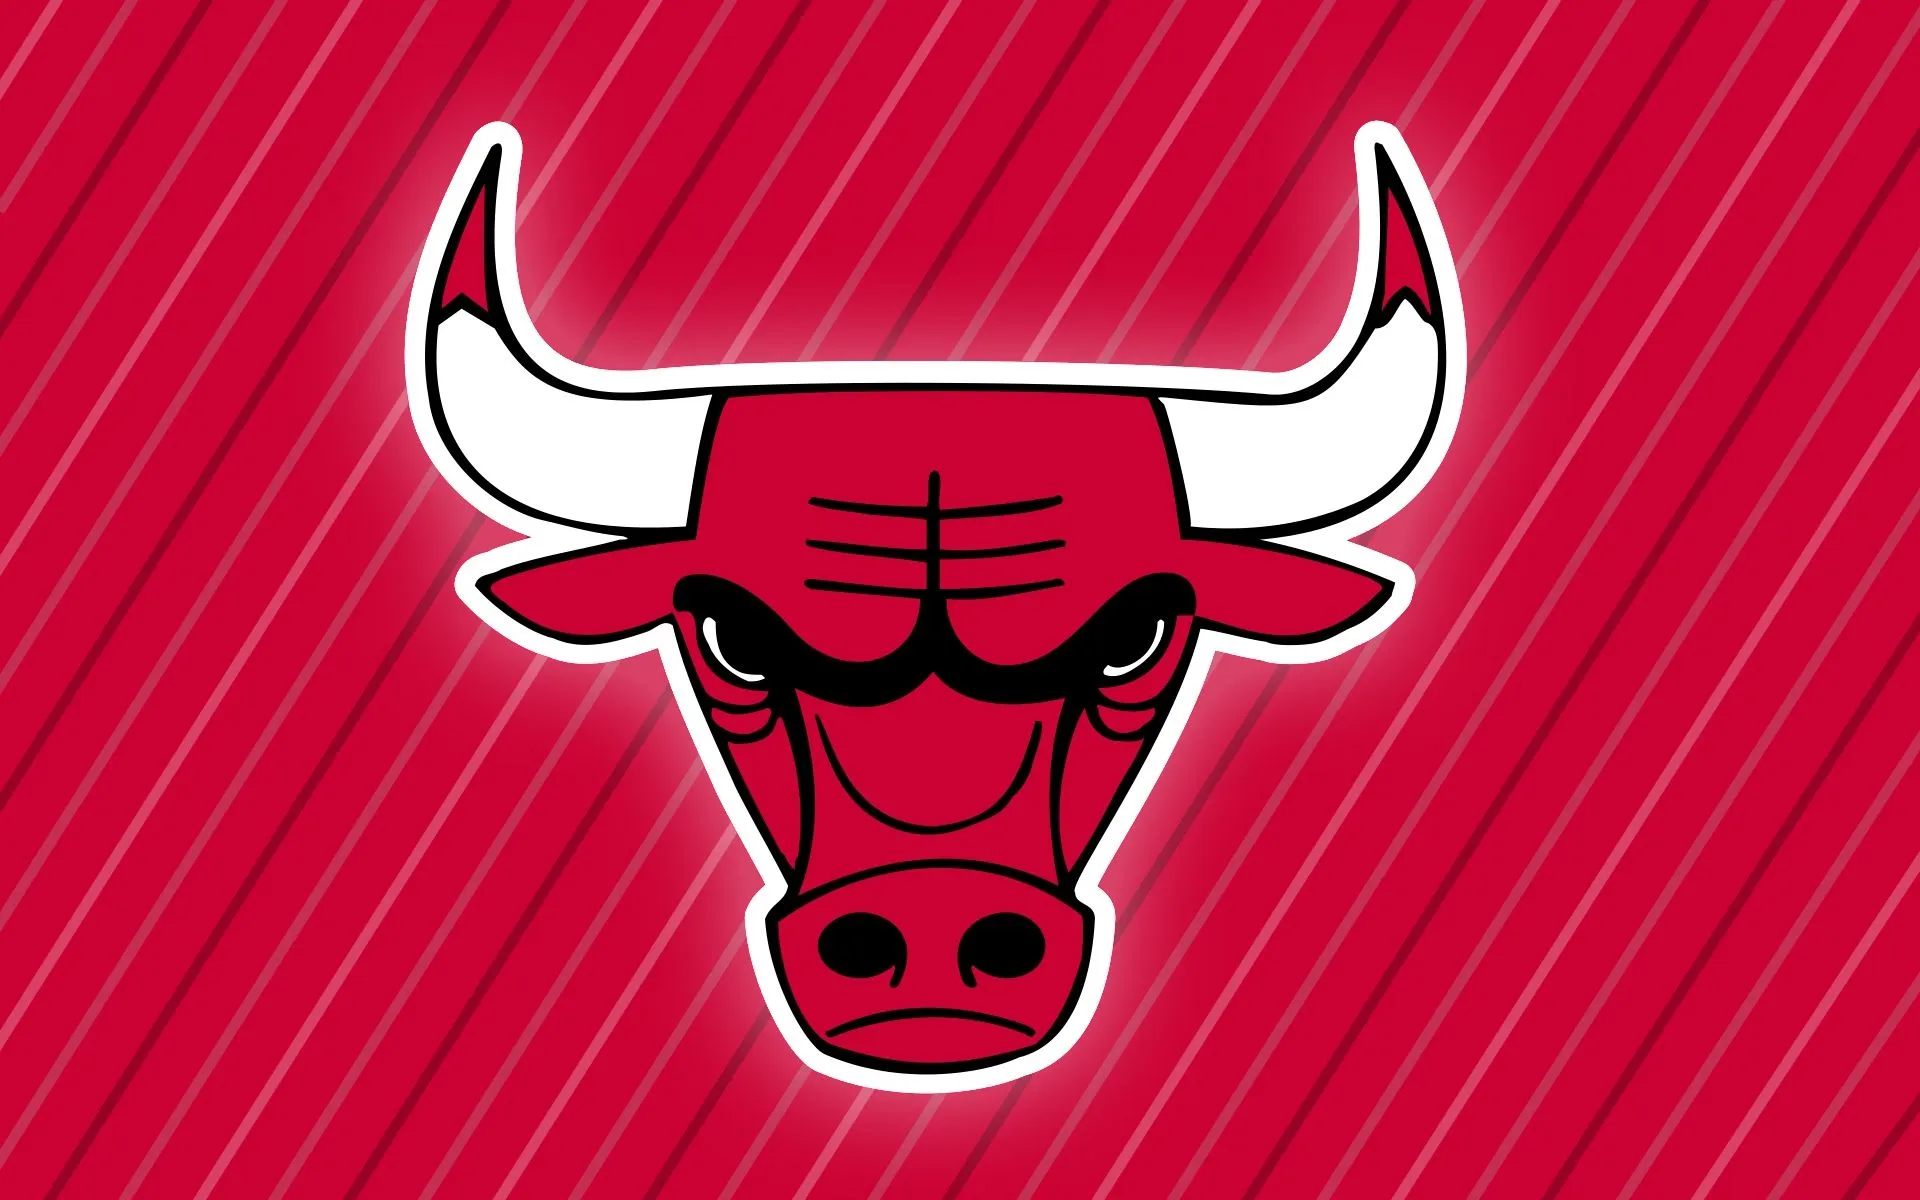 Chicago Bulls | Flickr - Photo Sharing!